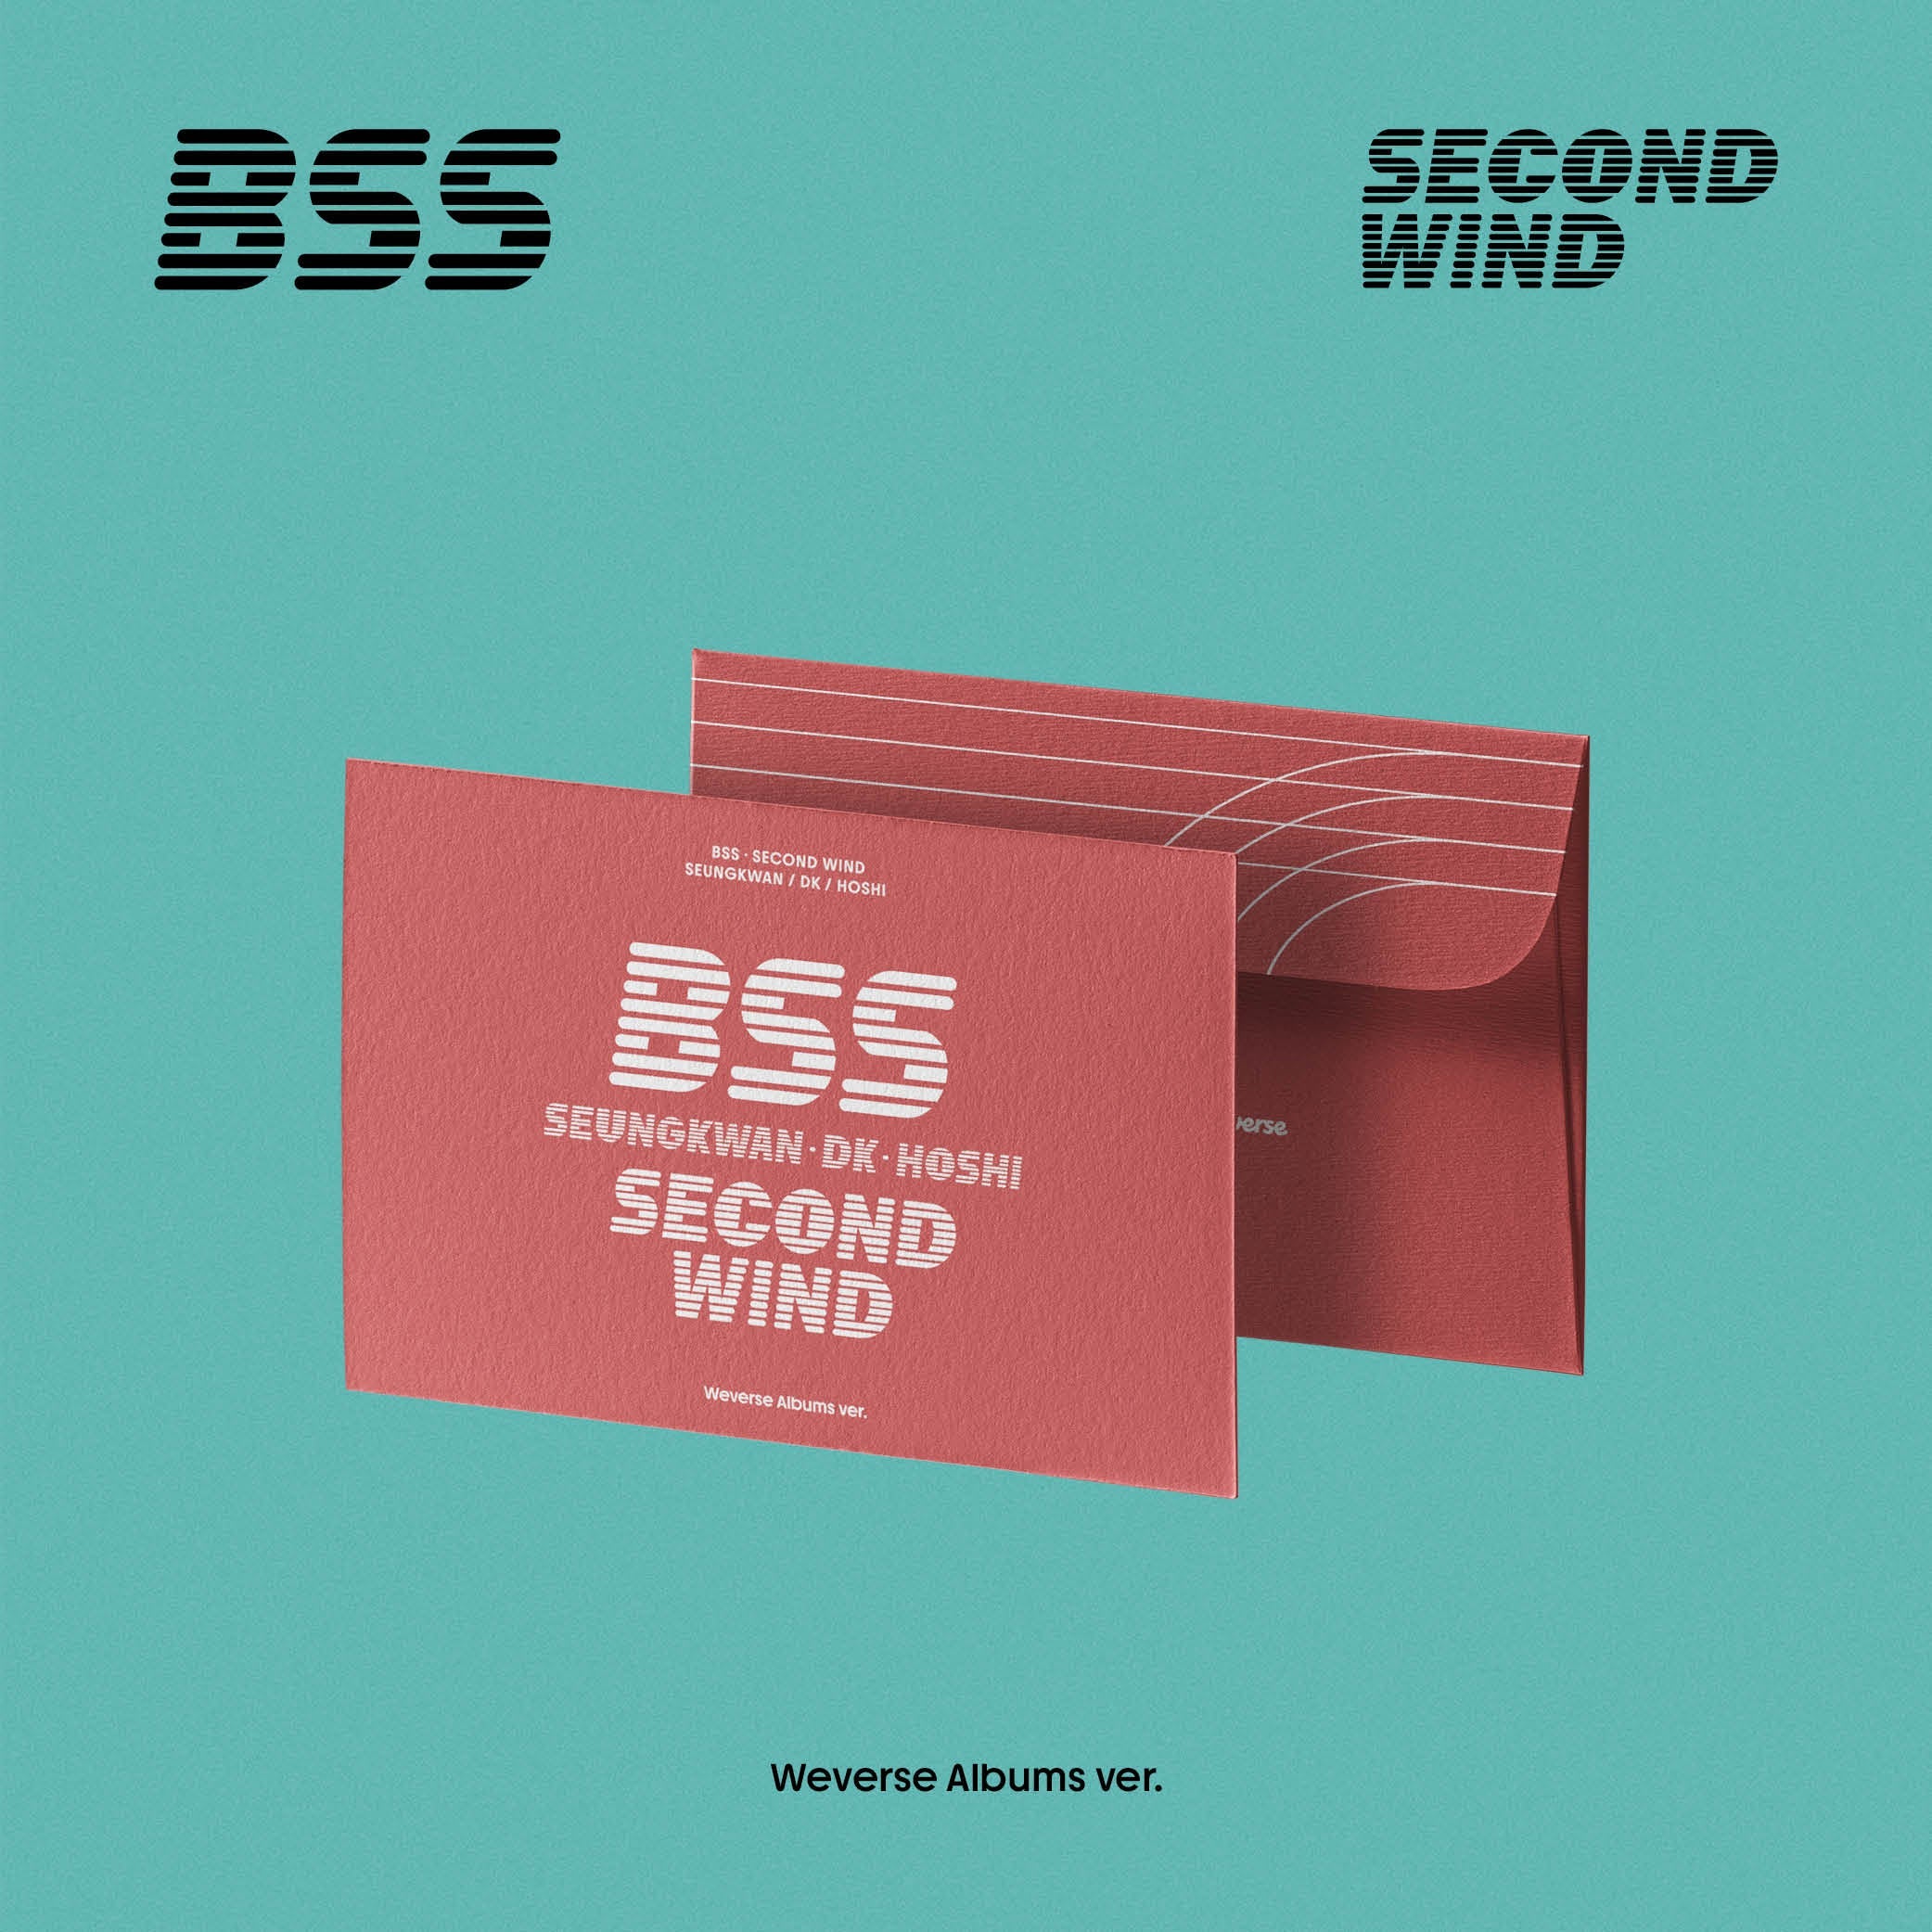 BSS (SEVENTEEN) - SECOND WIND (Weverse Albums ver.)